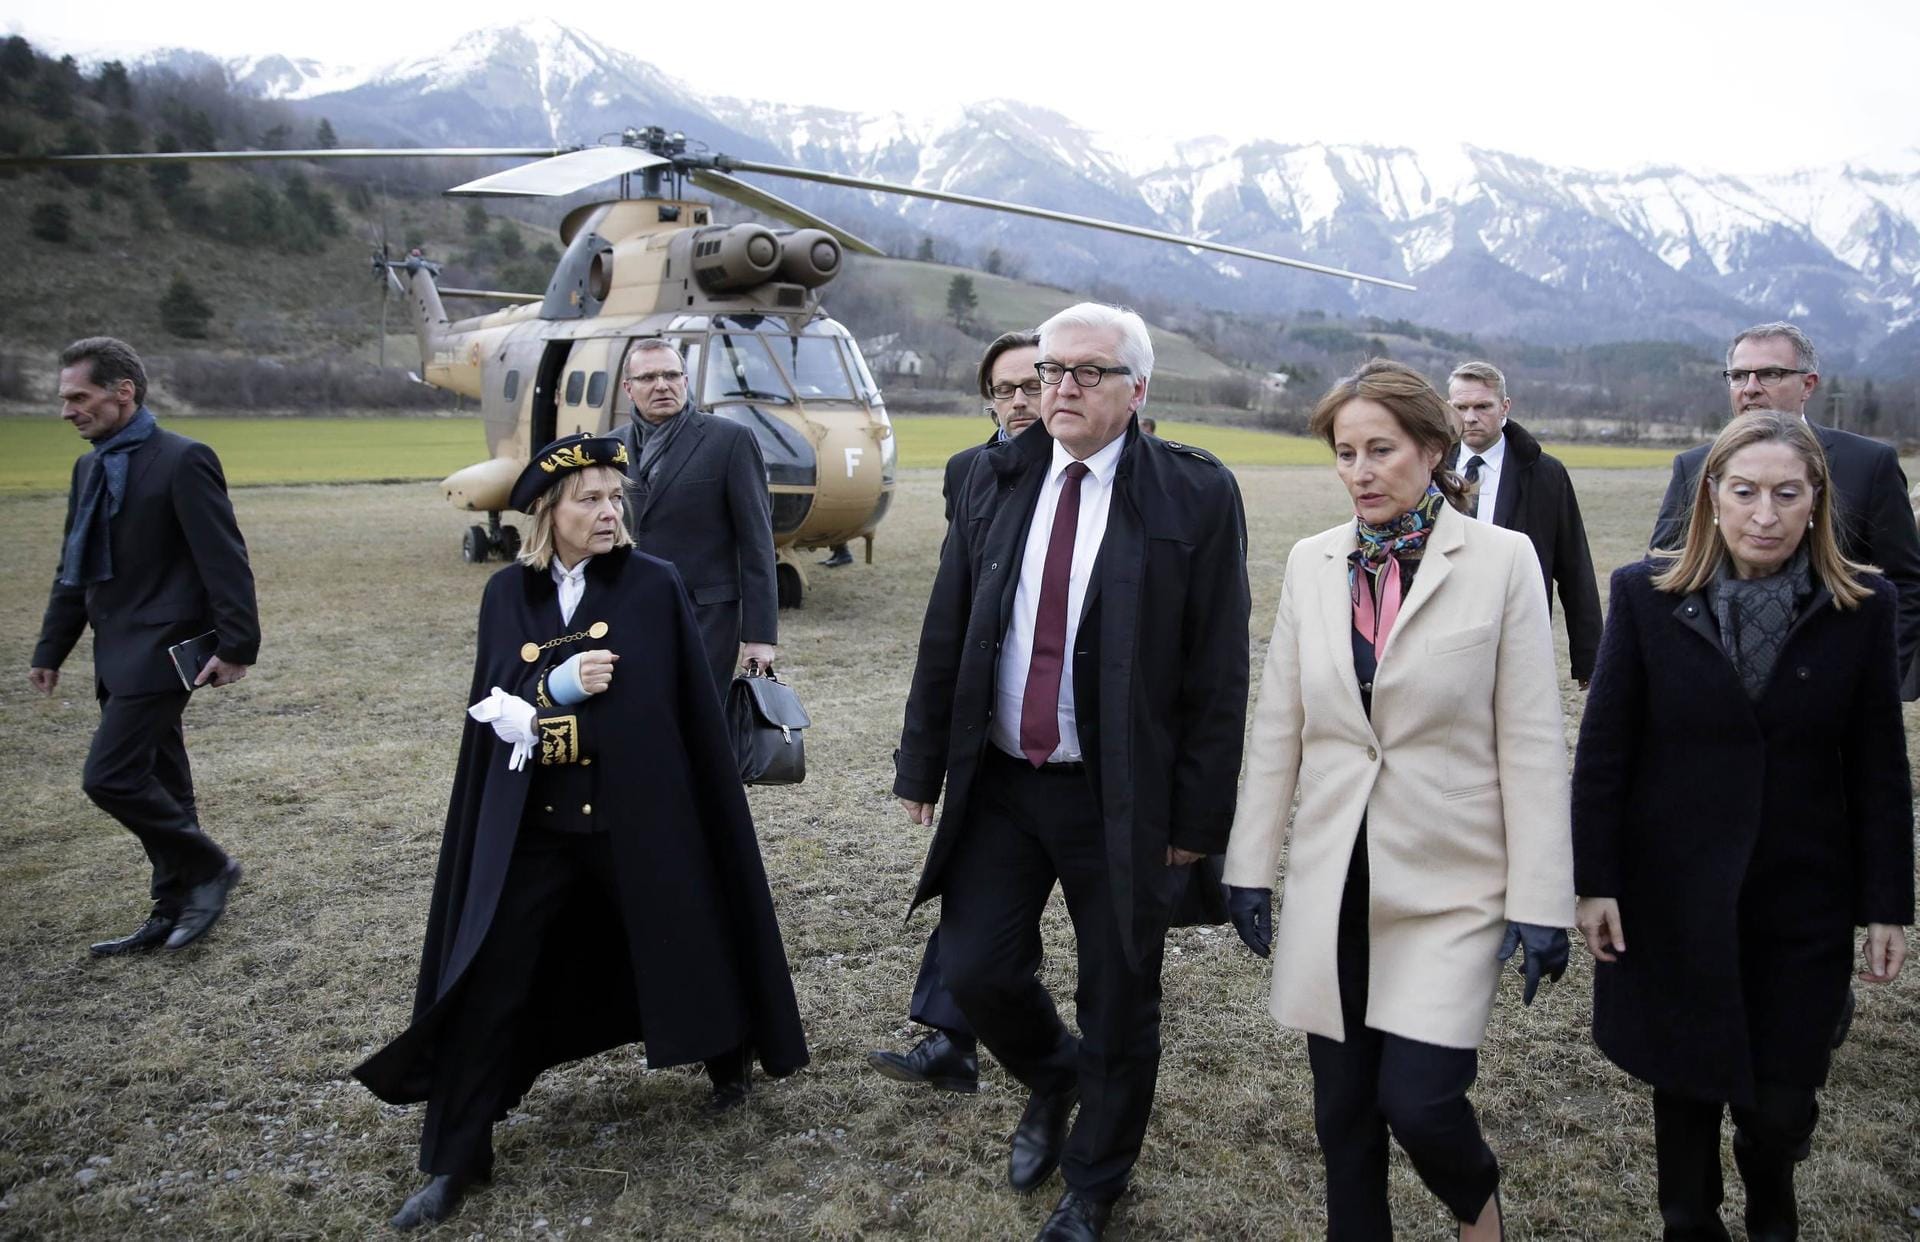 24. März 2015: Bundesaußenminister Frank-Walter Steinmeier trifft in den französischen Alpen ein. Zuvor hatte der Germanwings-Kopilot Andreas Lubitz eine A320-Maschine absichtlich am Bergmassiv zerschellen lassen, um Suizid zu begehen. Alle 150 Menschen an Bord kamen ums Leben.